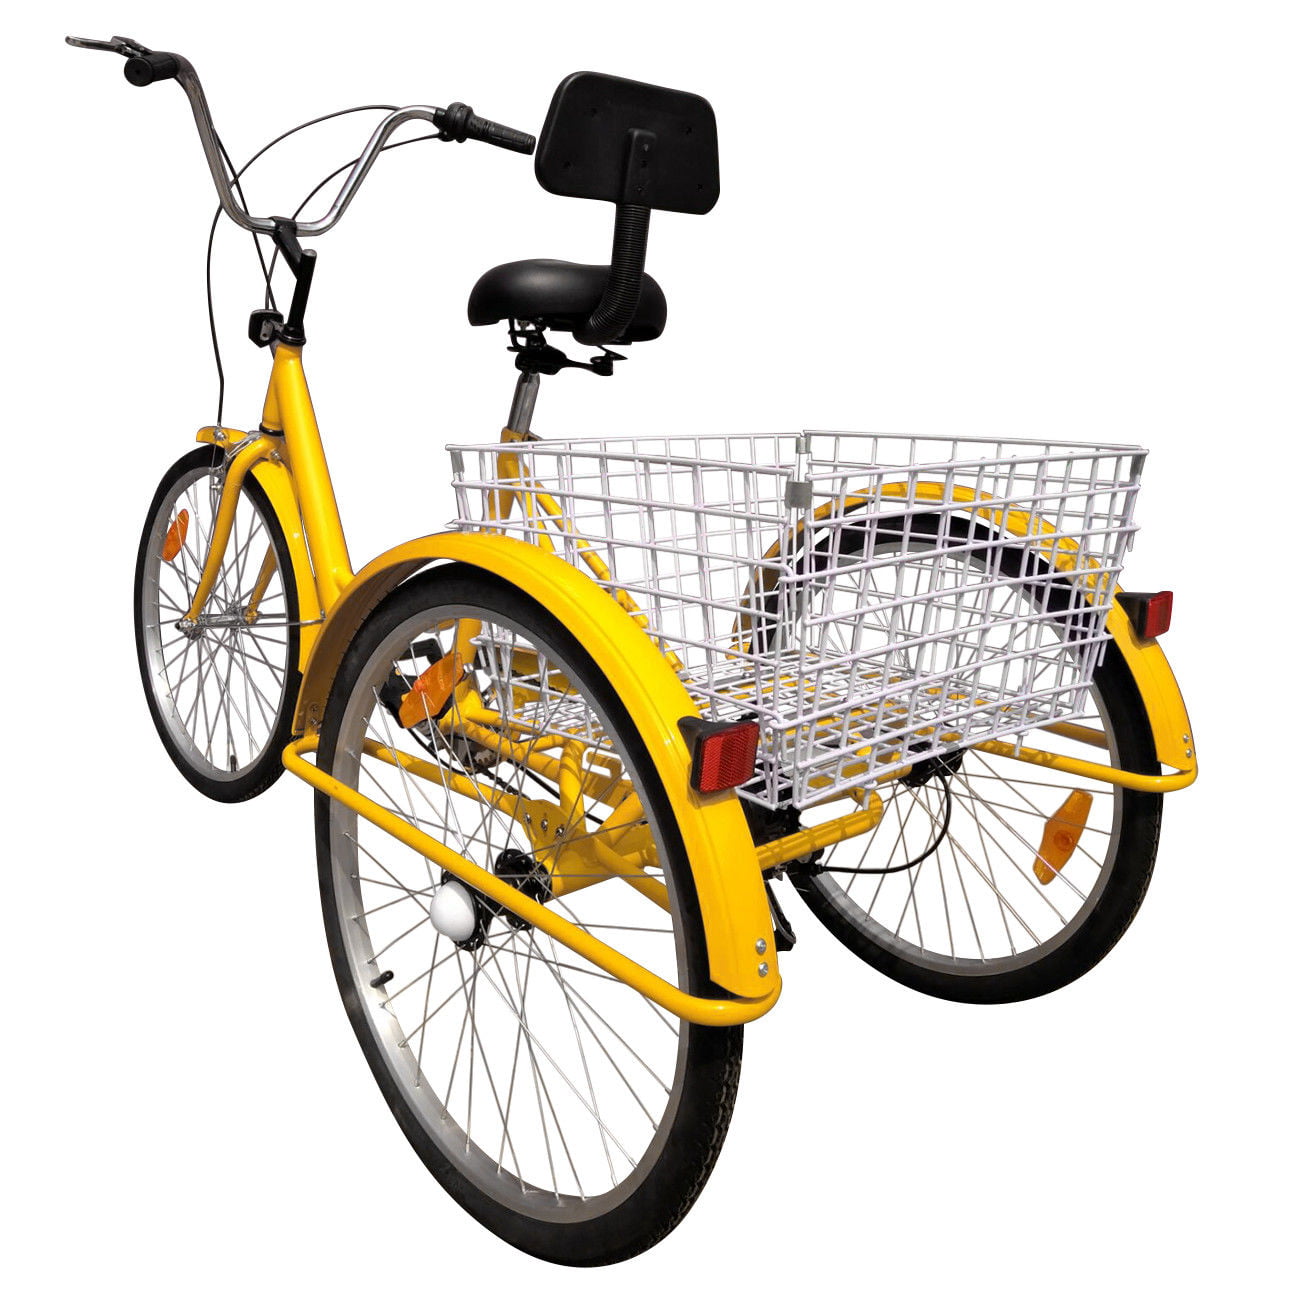 24" 3-Wheel Shimano 7-Speed Tricycle Trike Bicycle Bike Cruise Basket Ridgeyard 